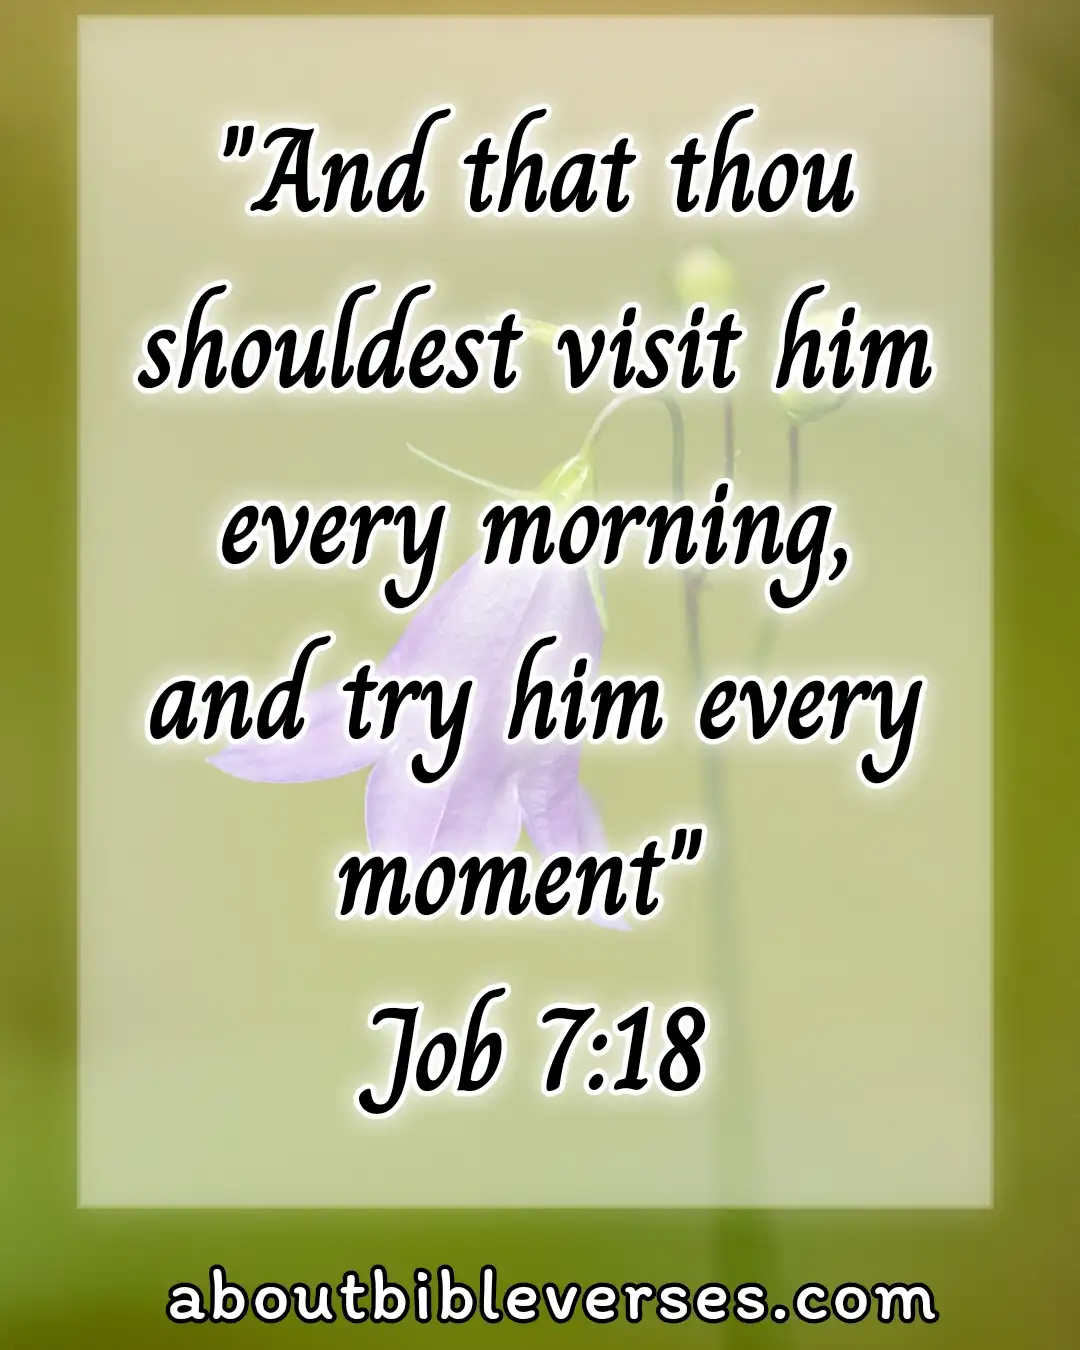 Good morning bible verses (Job 7:18)